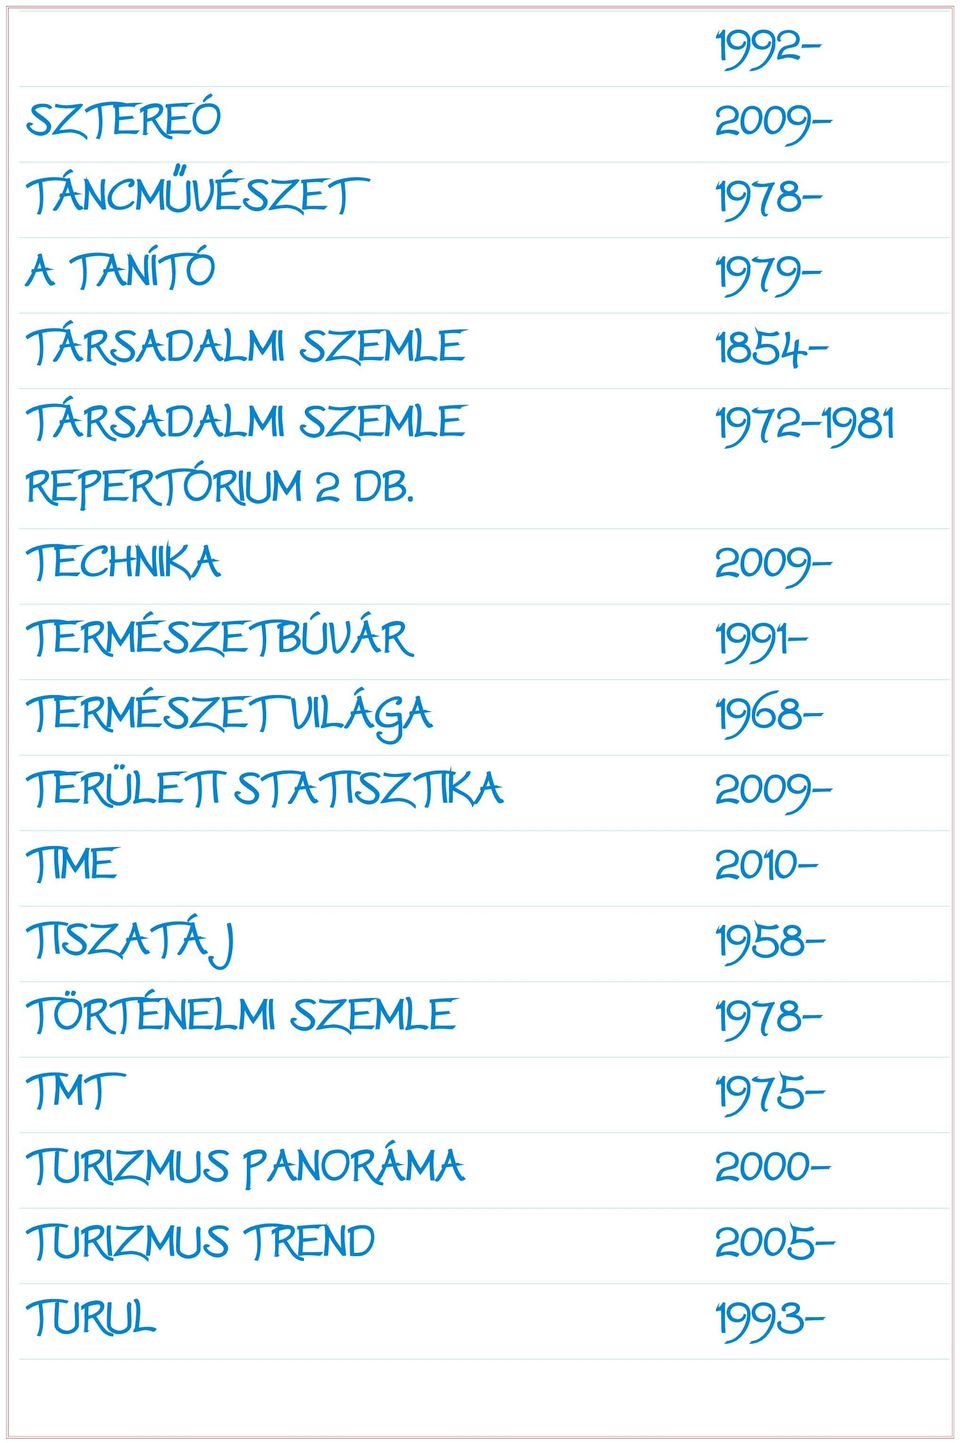 TECHNIKA 2009- TERMÉSZETBÚVÁR 1991- TERMÉSZET VILÁGA 1968- TERÜLETI STATISZTIKA